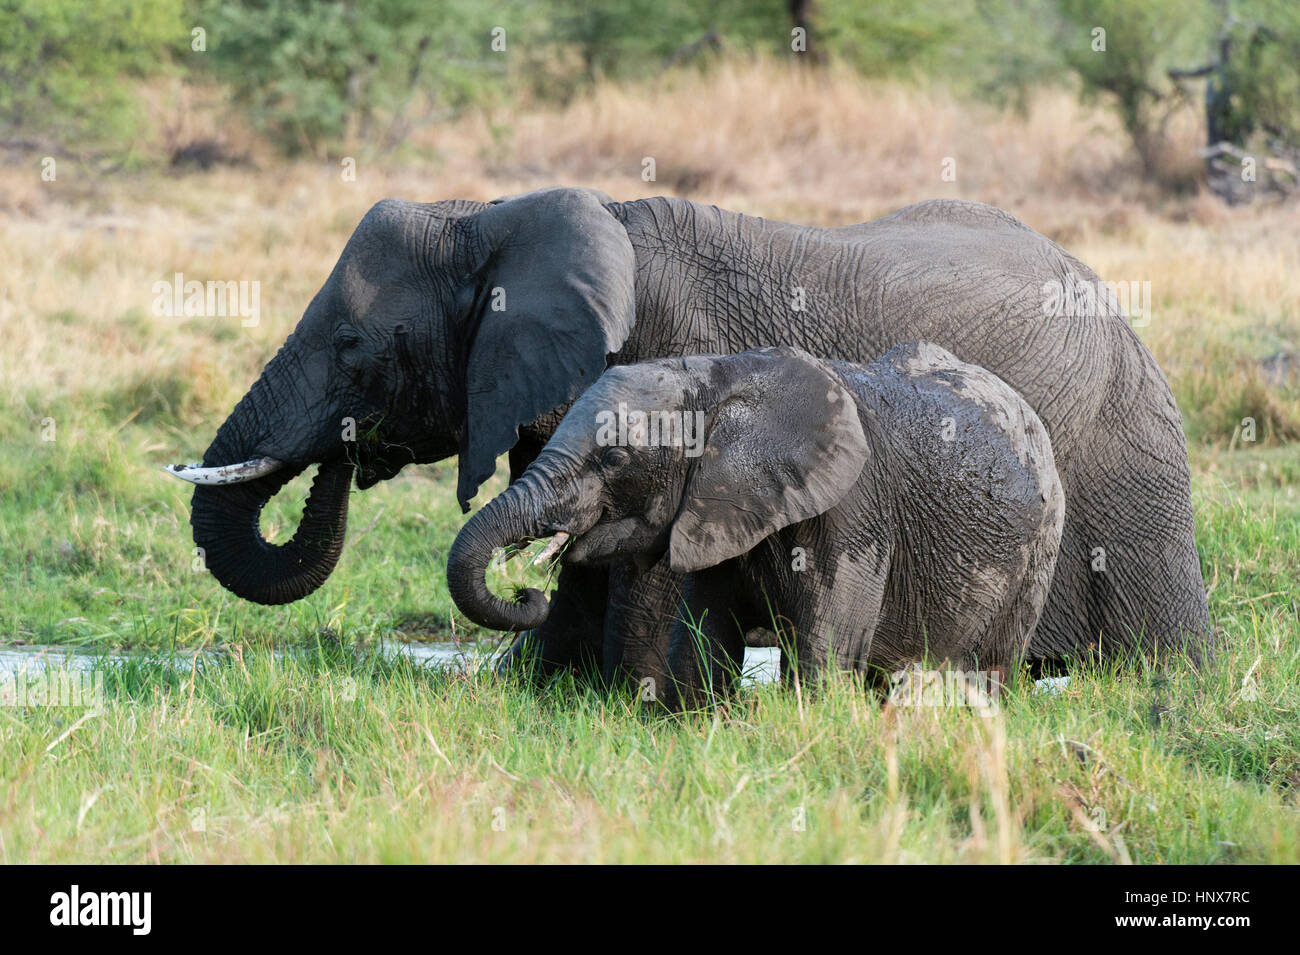 Juvenile elephant (Loxodonta africana) and mother feeding on grass, Khwai concession, Okavango delta, Botswana Stock Photo